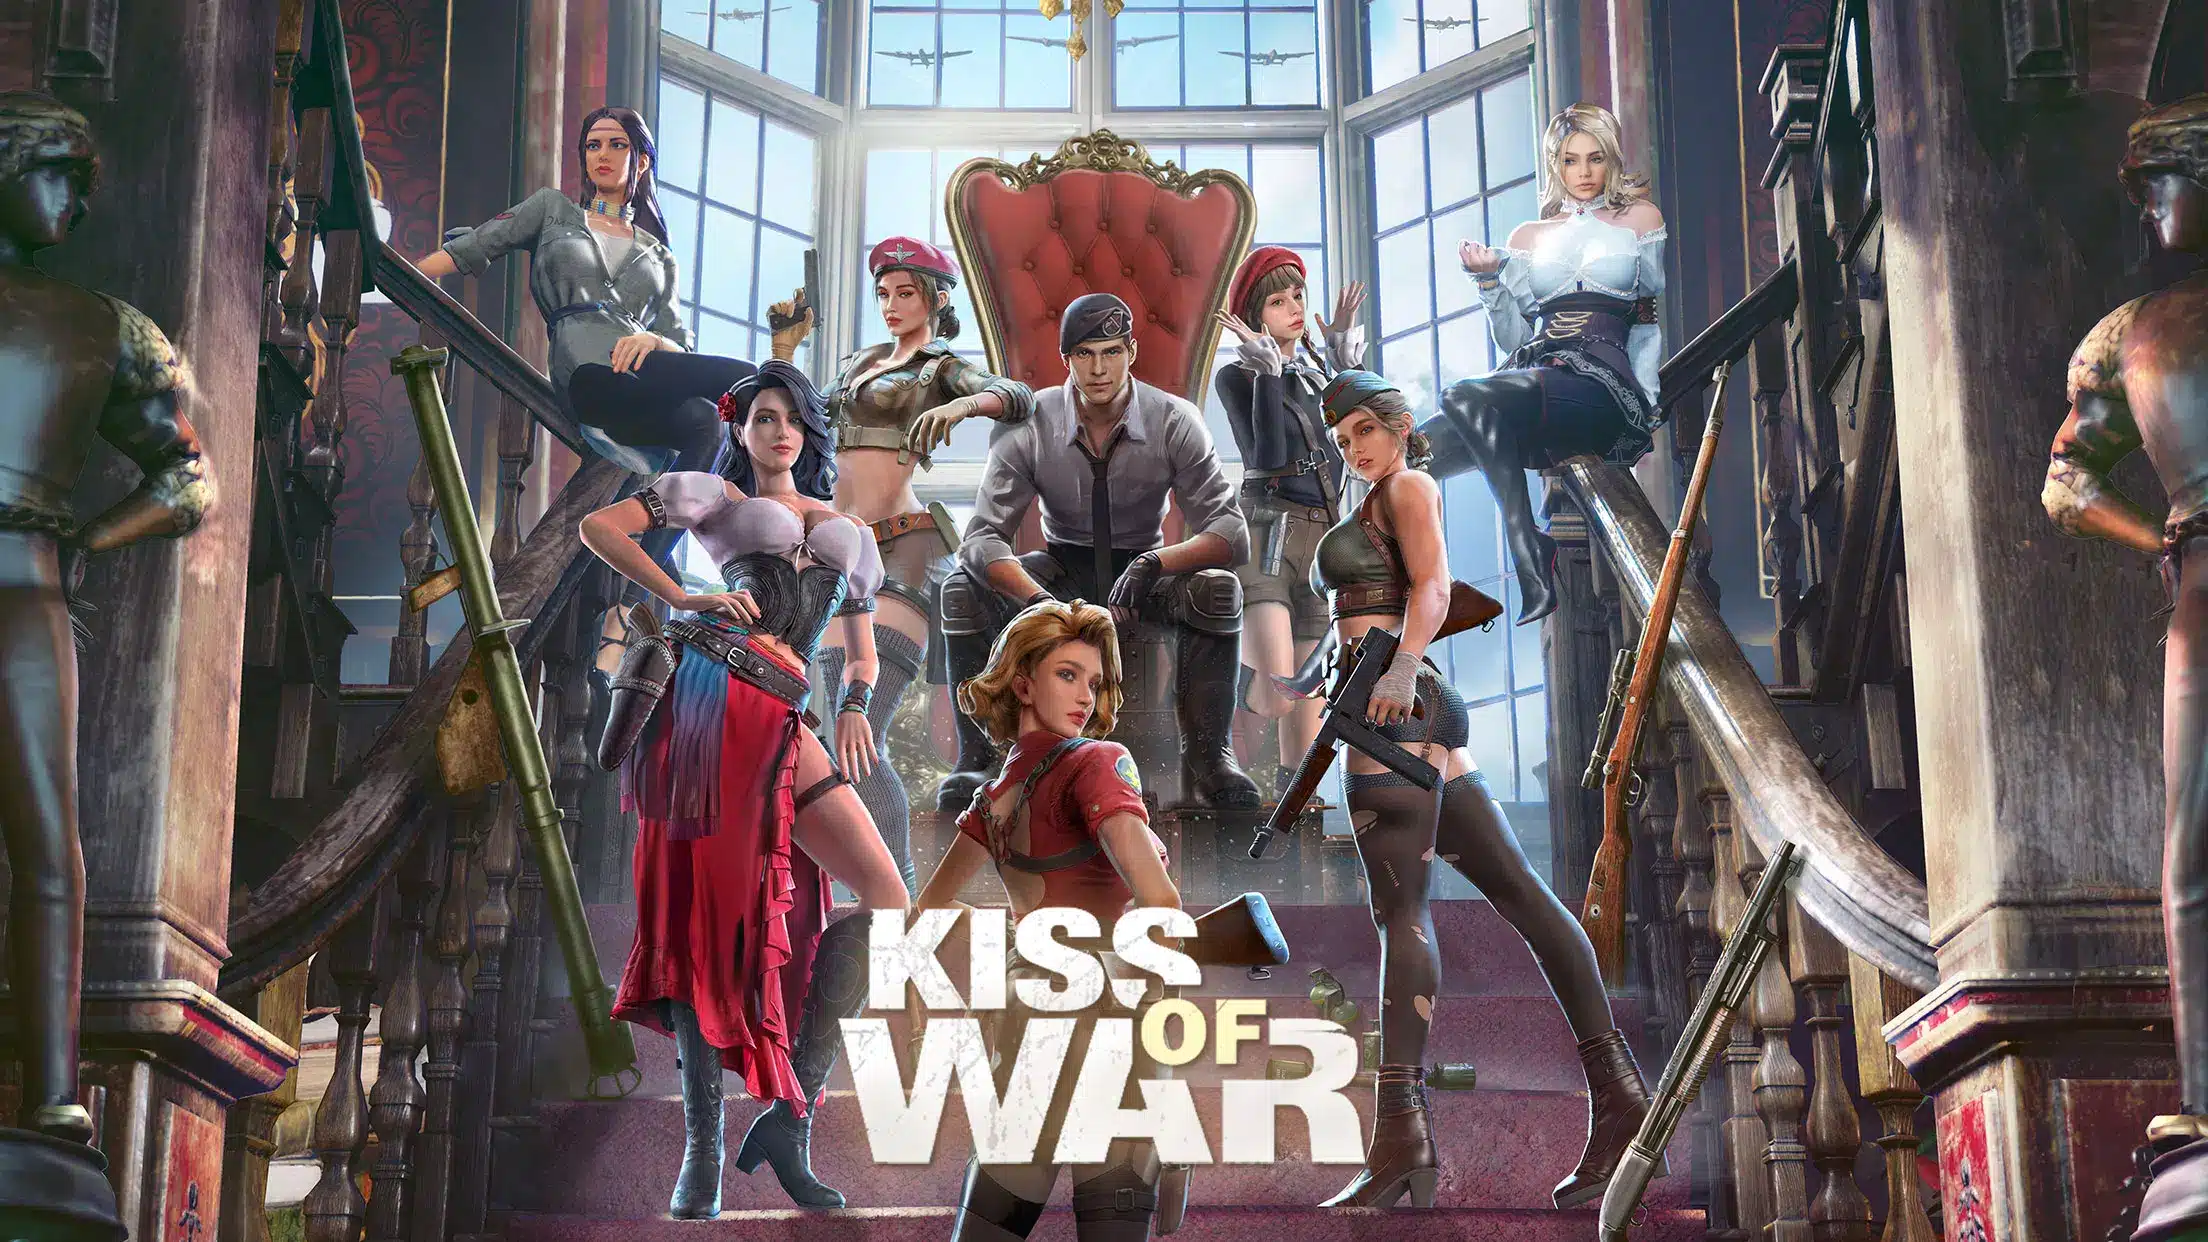 Kiss of War Image 1